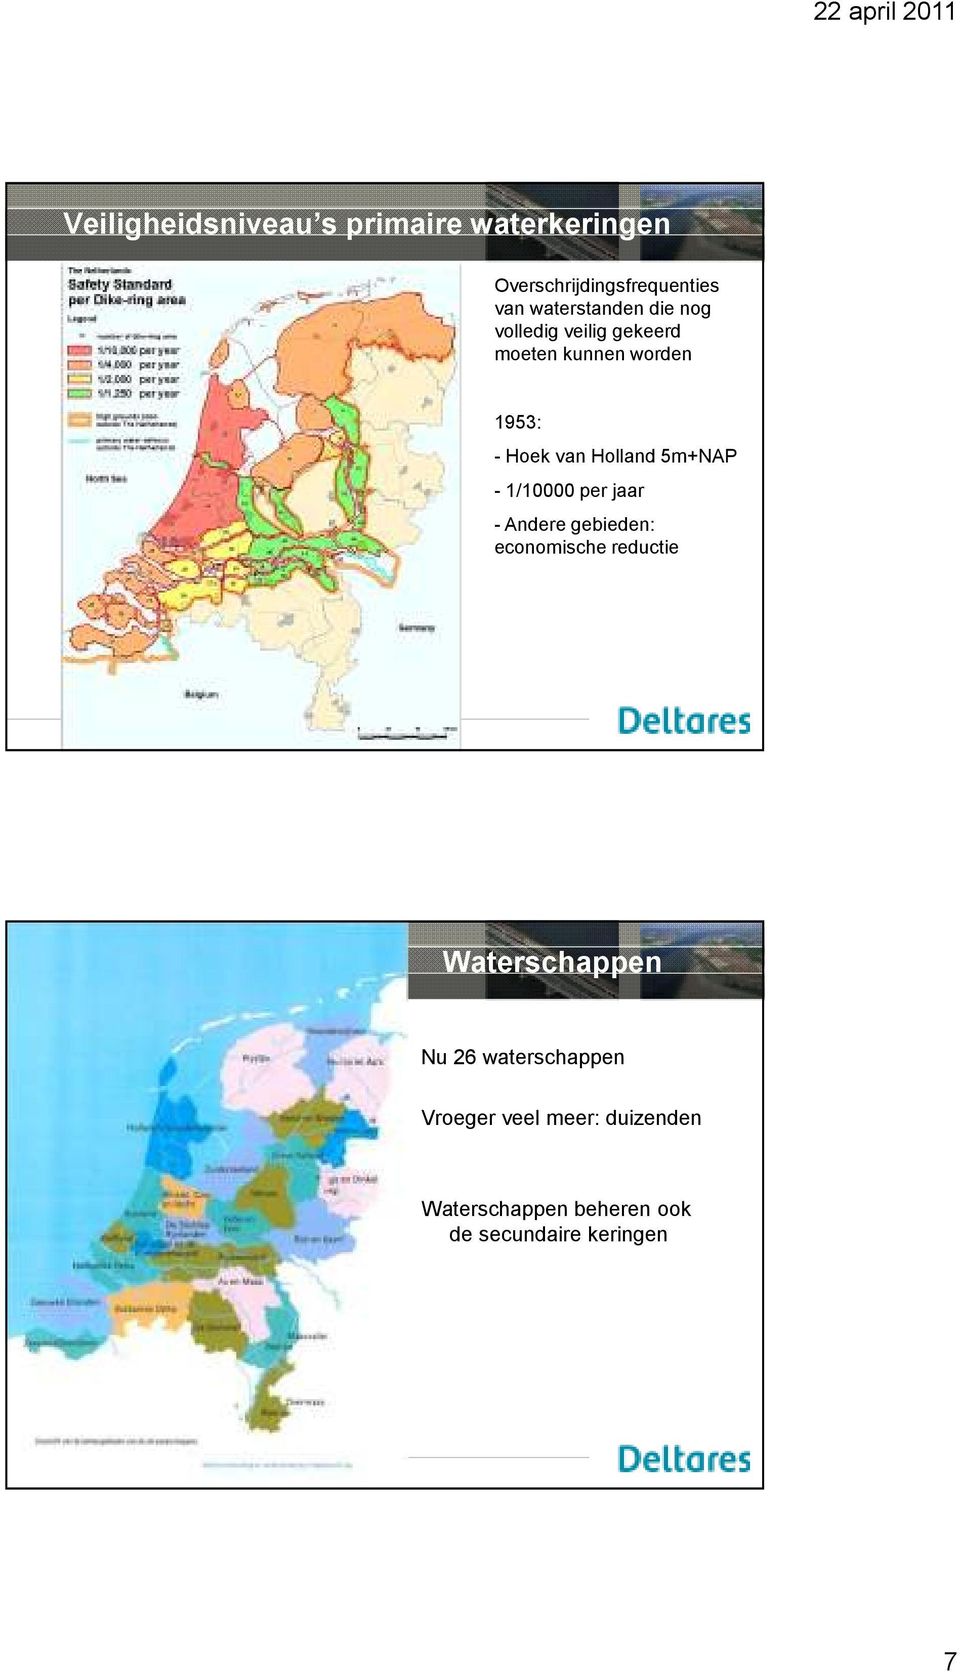 Holland 5m+NAP - 1/10000 per jaar - Andere gebieden: economische reductie